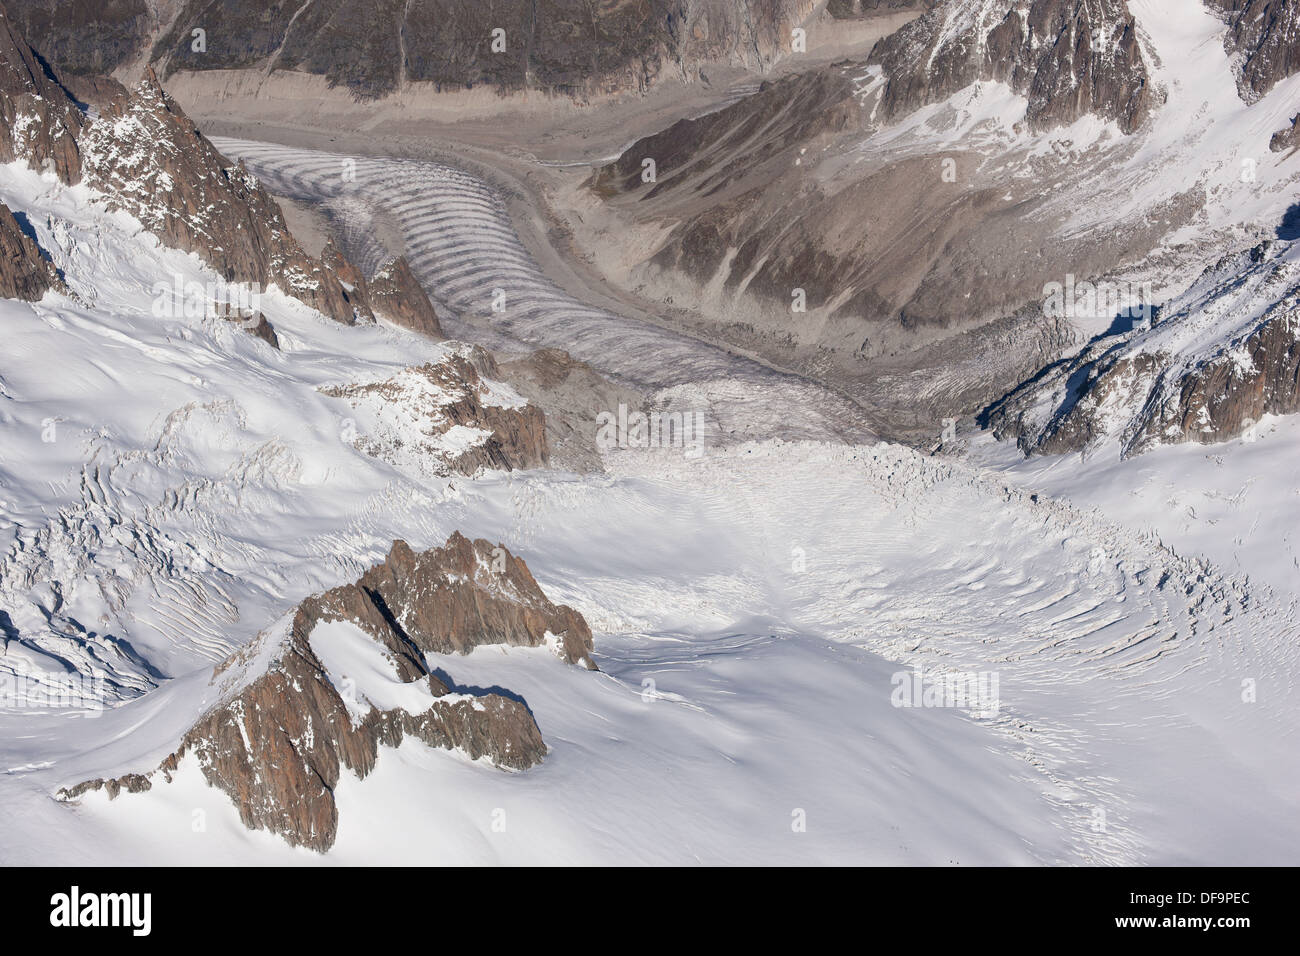 LUFTAUFNAHME. Gletscher von Tacul und Mer de Glace. Forbes Bänder (Ogives) sichtbar auf dem Mer de Glace Gletscher. Chamonix Mont-Blanc, Haute-Savoie, Frankreich. Stockfoto